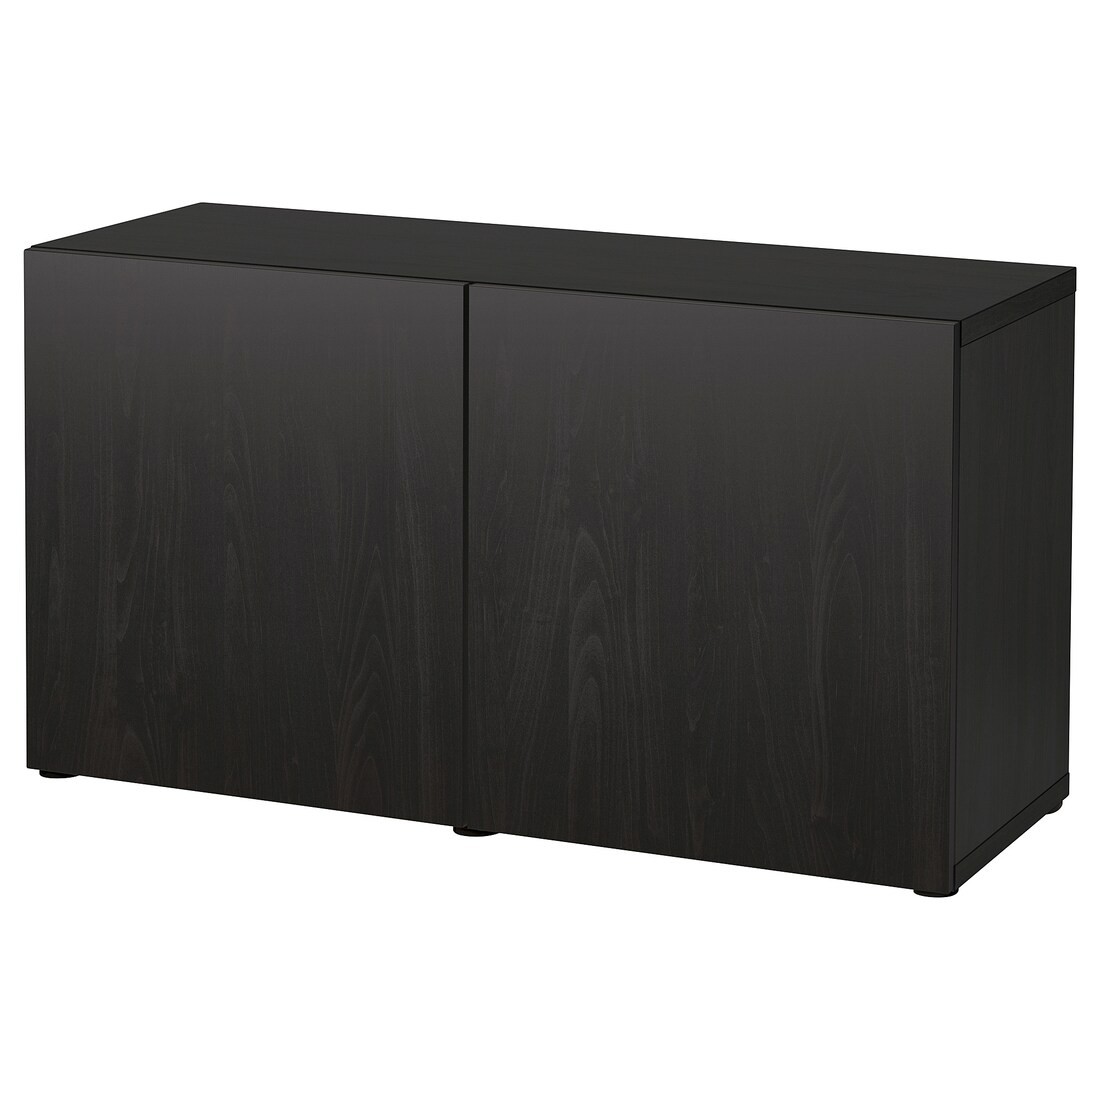 BESTÅ БЕСТО Комбинация для хранения с дверцами, черно-коричневый / Lappviken черно-коричневый, 120x42x65 см